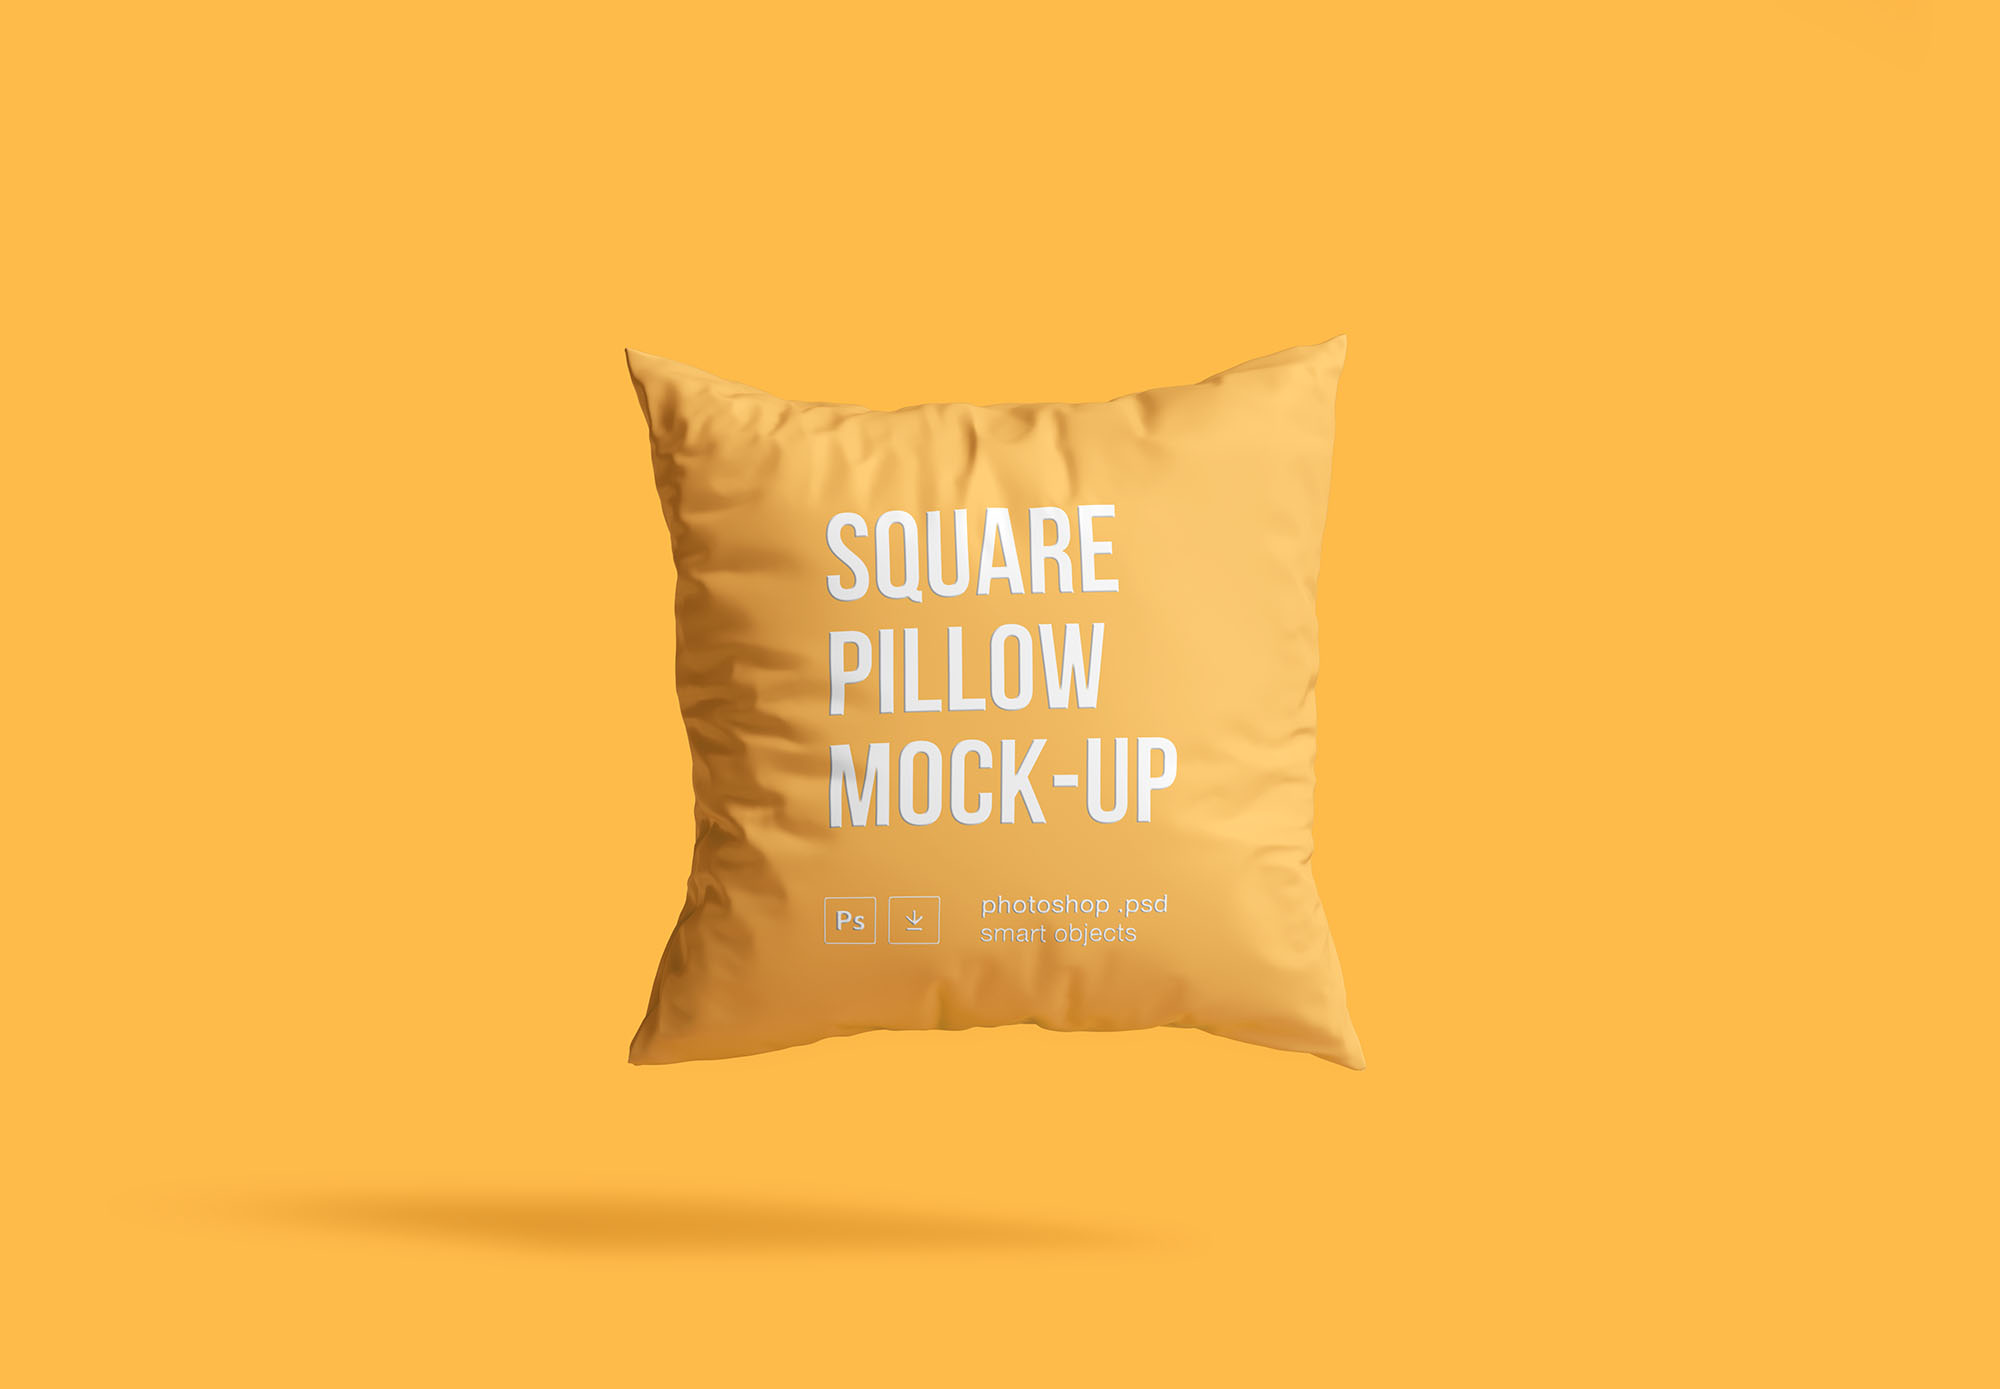 方形枕头抱枕外观设计样机模板 Square Pillow Mockup插图(2)